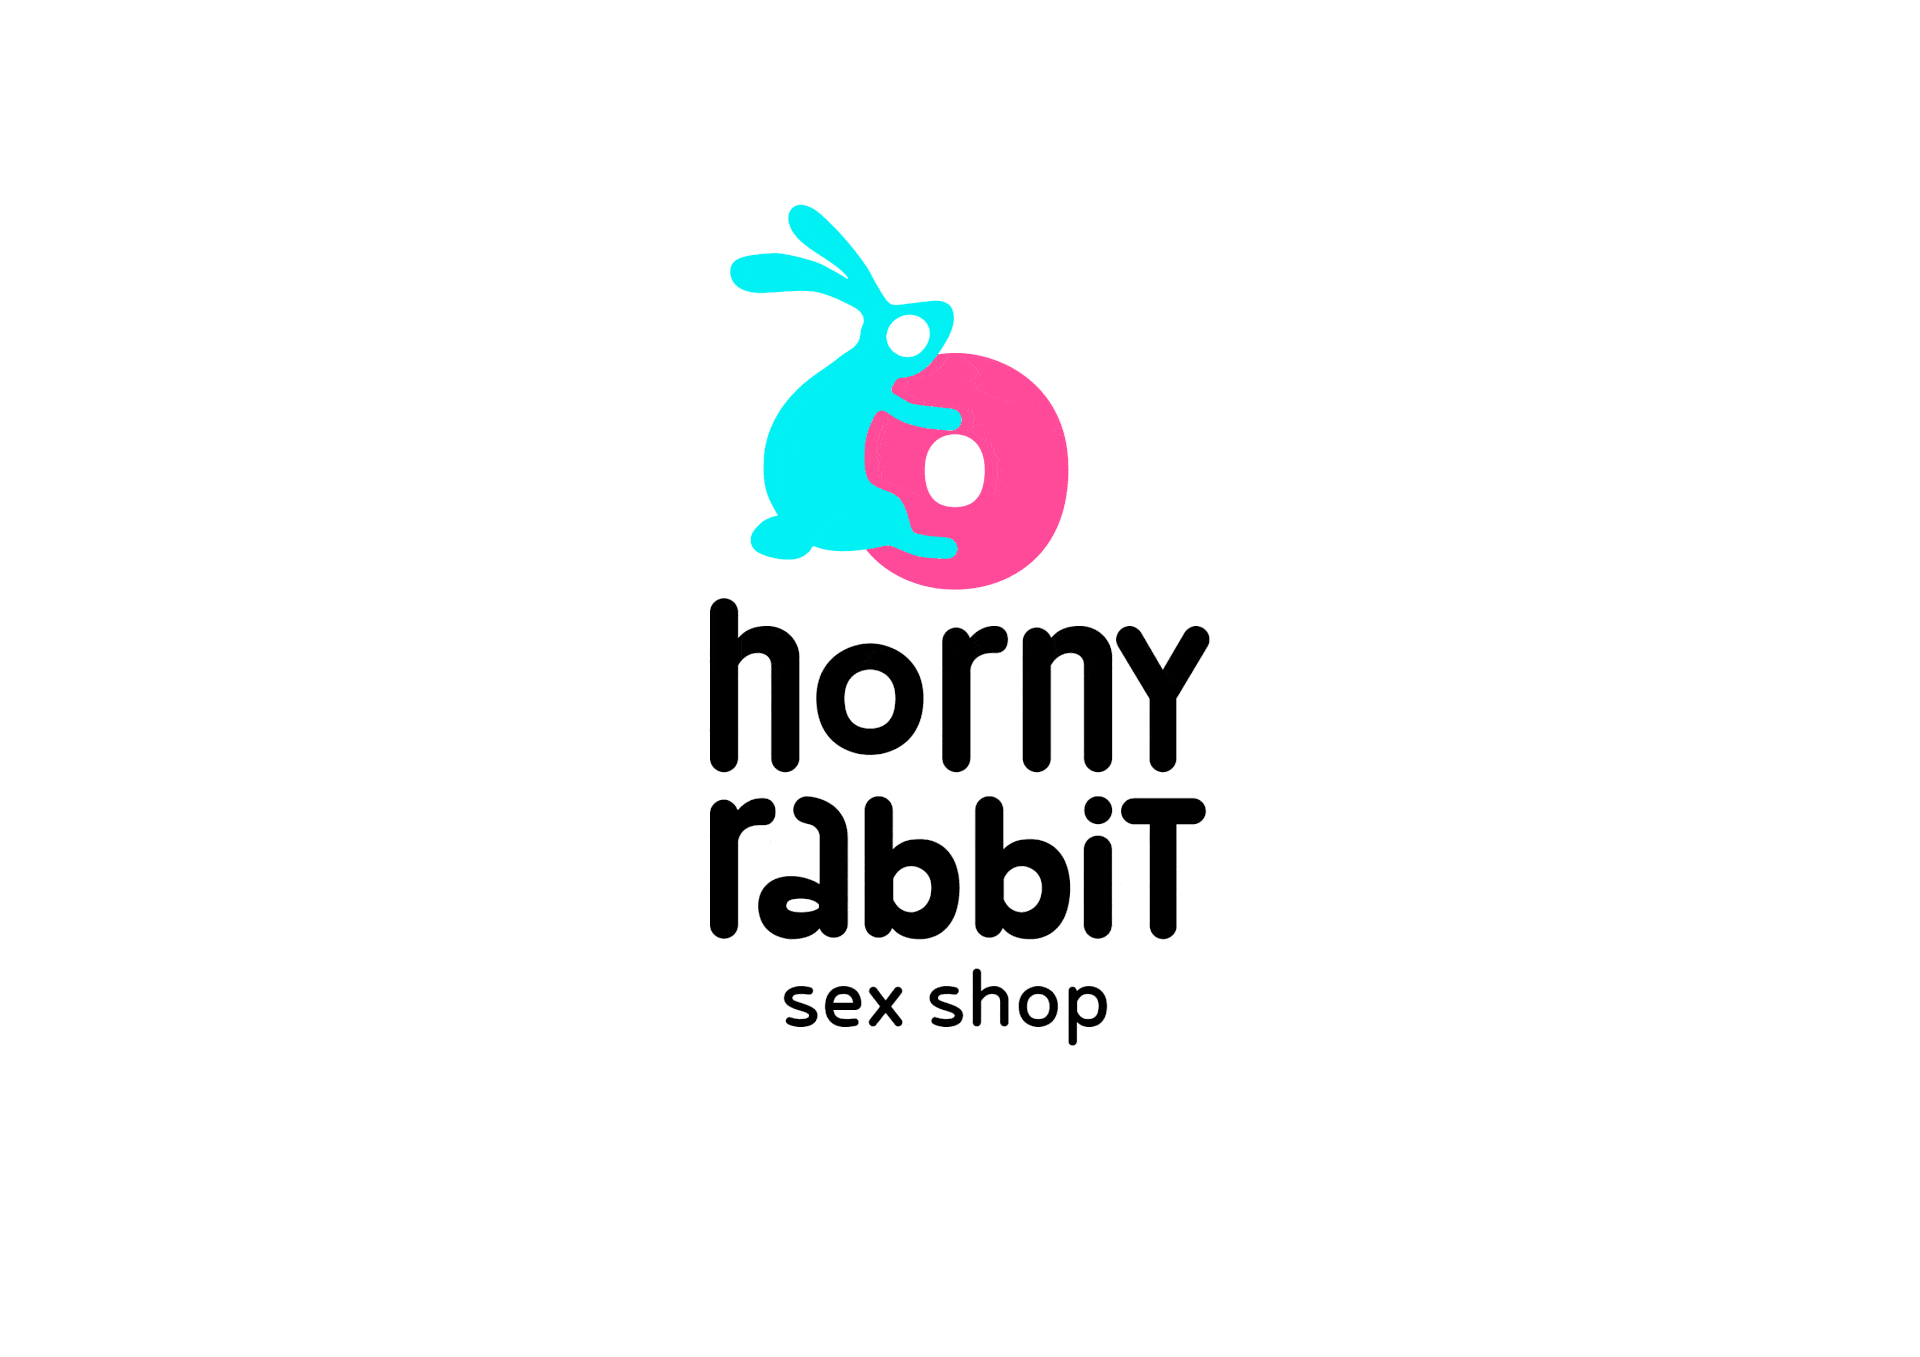 Horny Rabbit - Sex Shop Concept